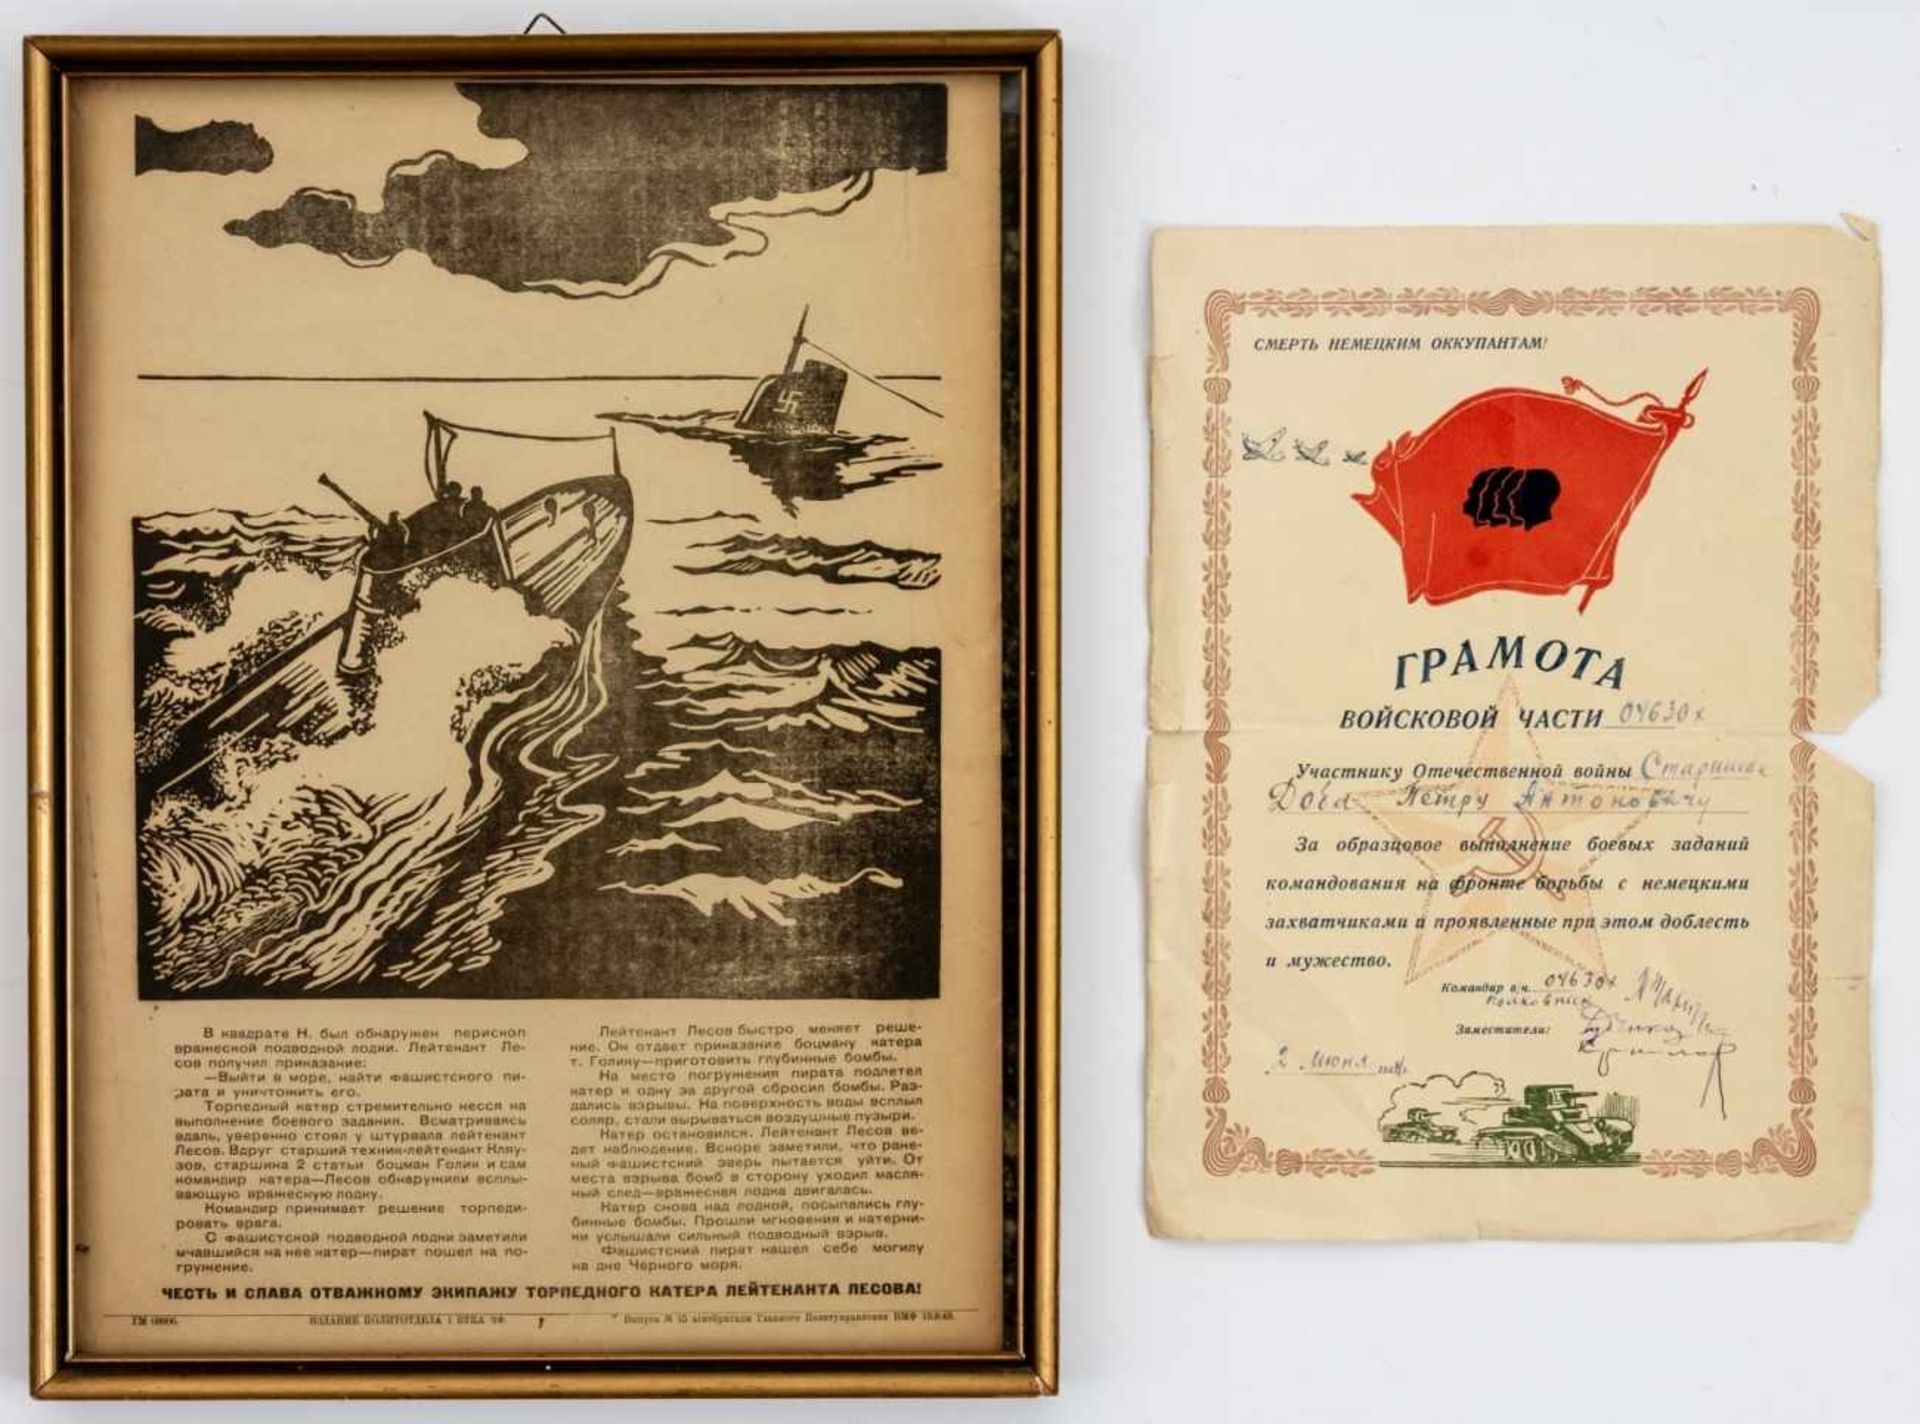 Sowjetisches Propagandaplakat mit der Geschichte der Versenkung eines faschistischen U-Bootes